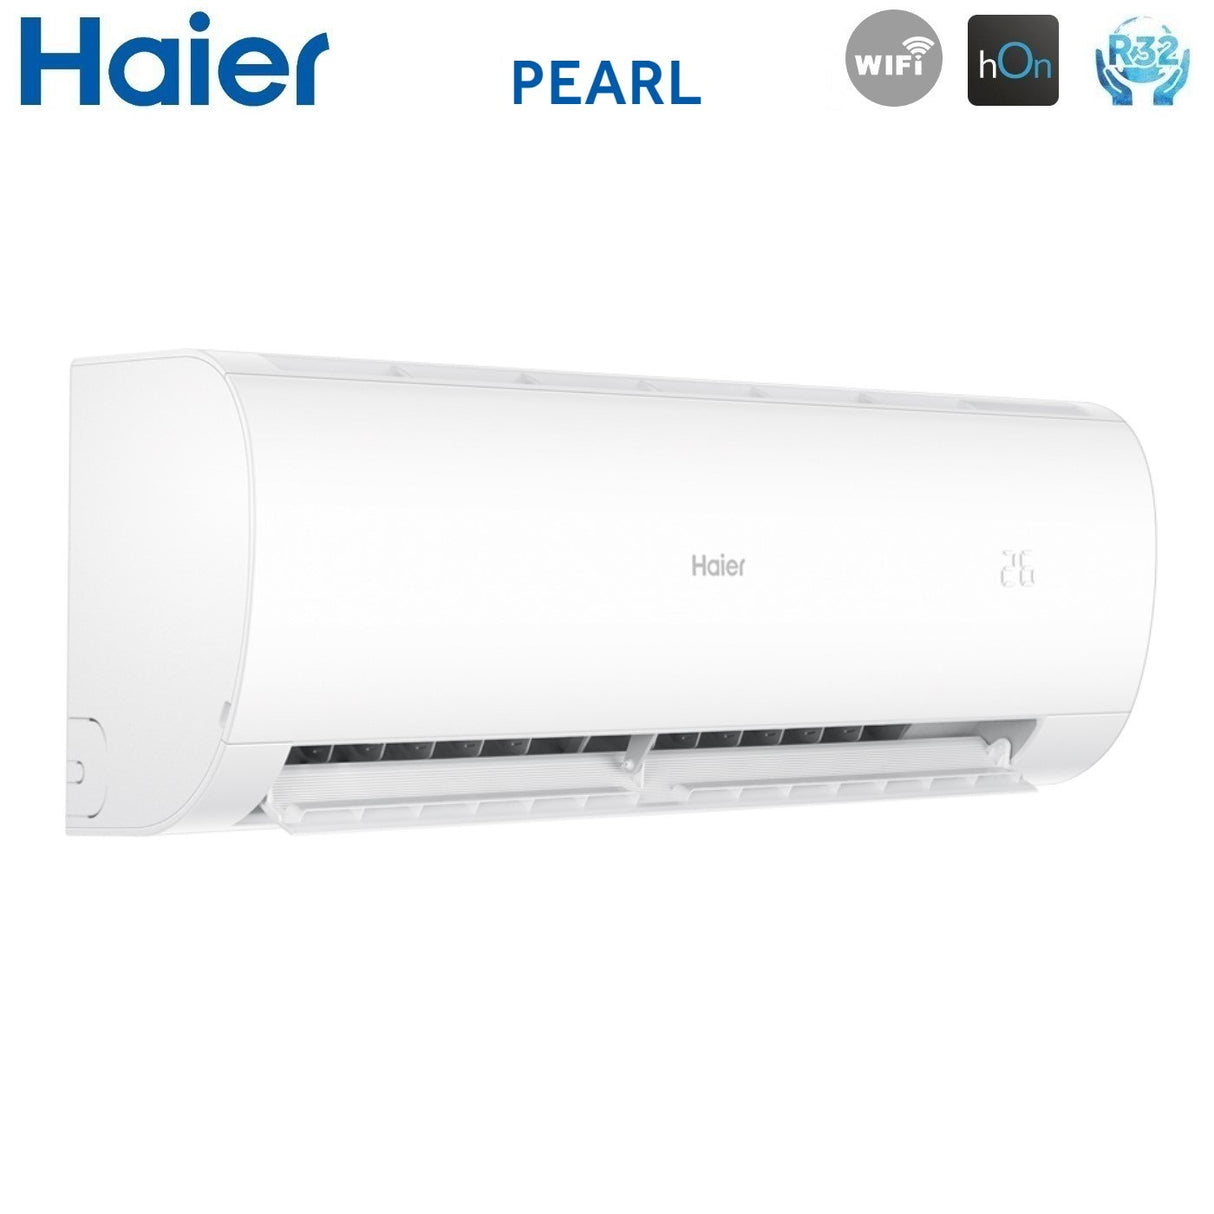 immagine-4-haier-climatizzatore-condizionatore-haier-trial-split-inverter-serie-pearl-999-con-3u55s2sr3fa-r-32-wi-fi-integrato-900090009000-novita